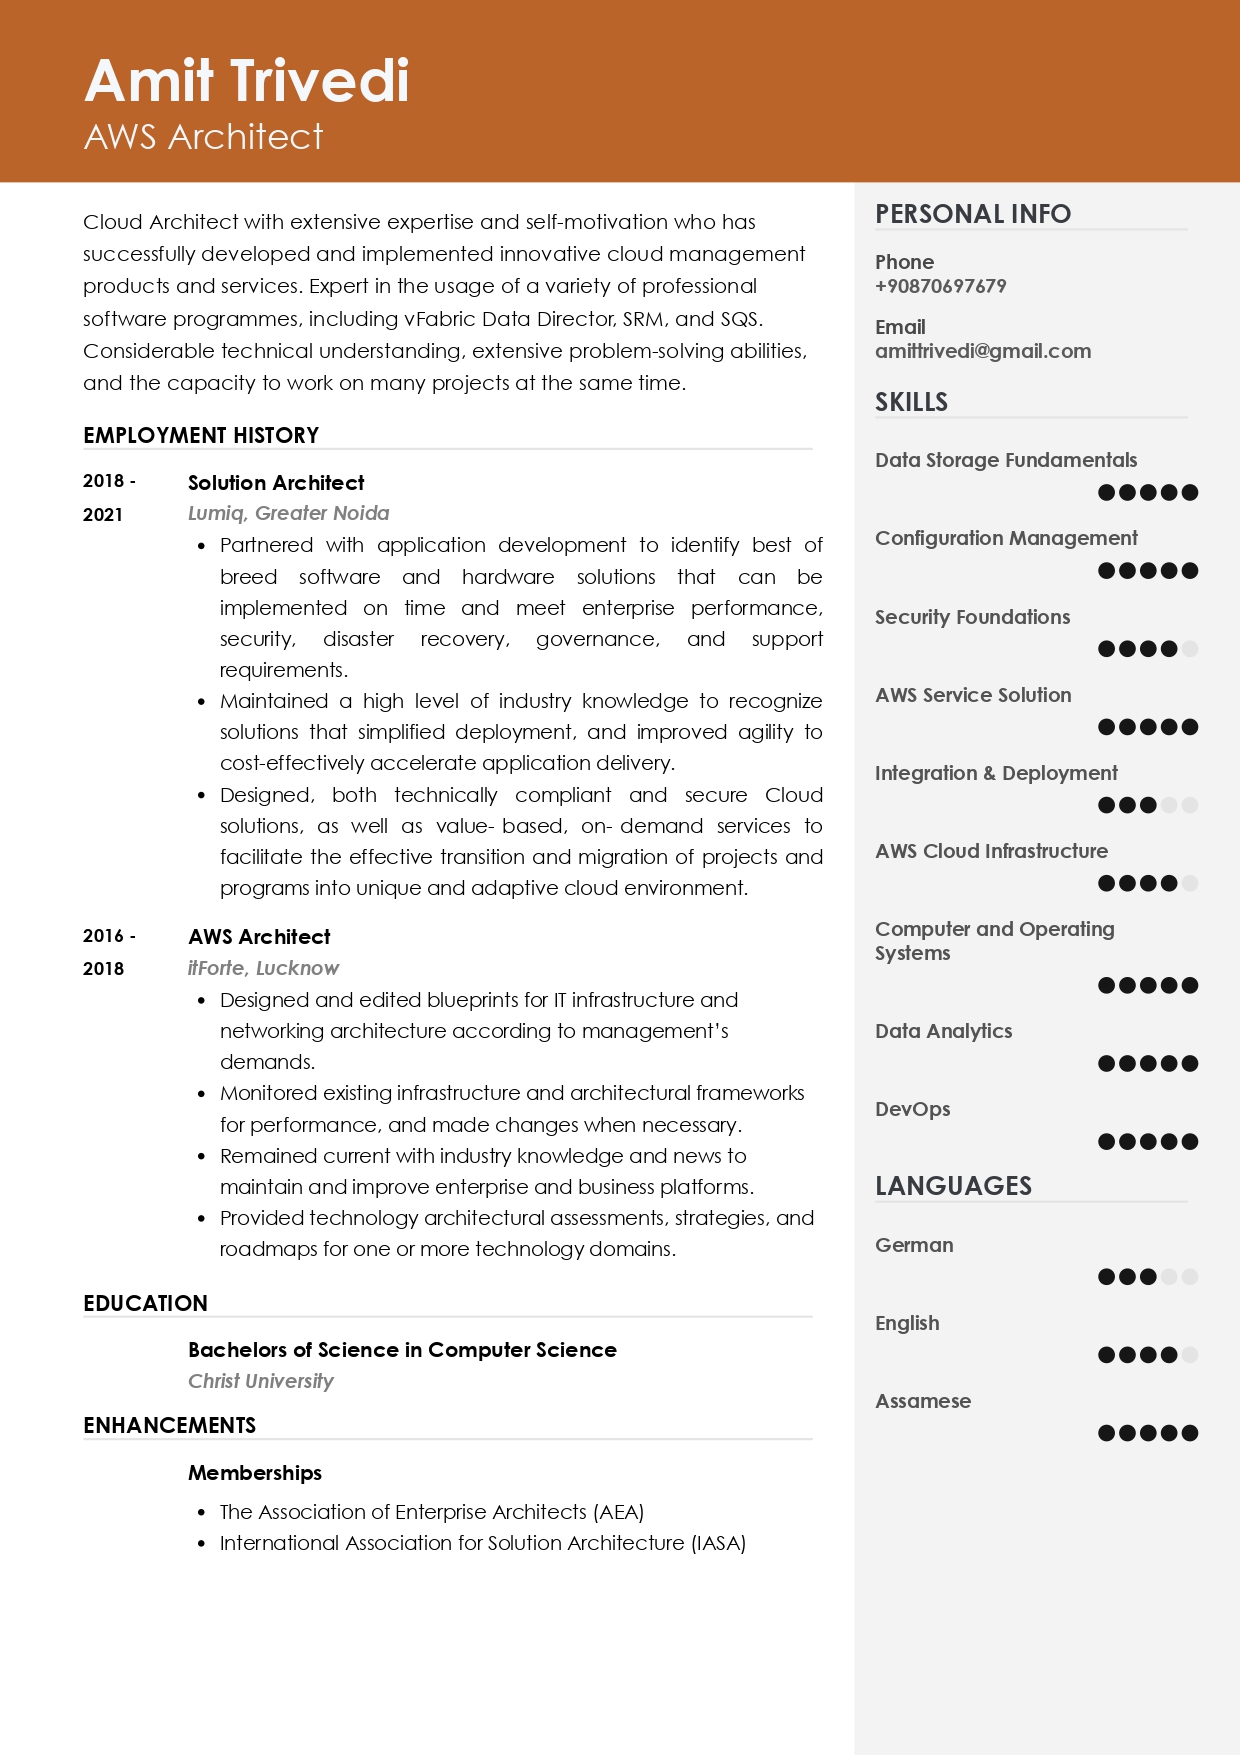 Resume of AWS Architect